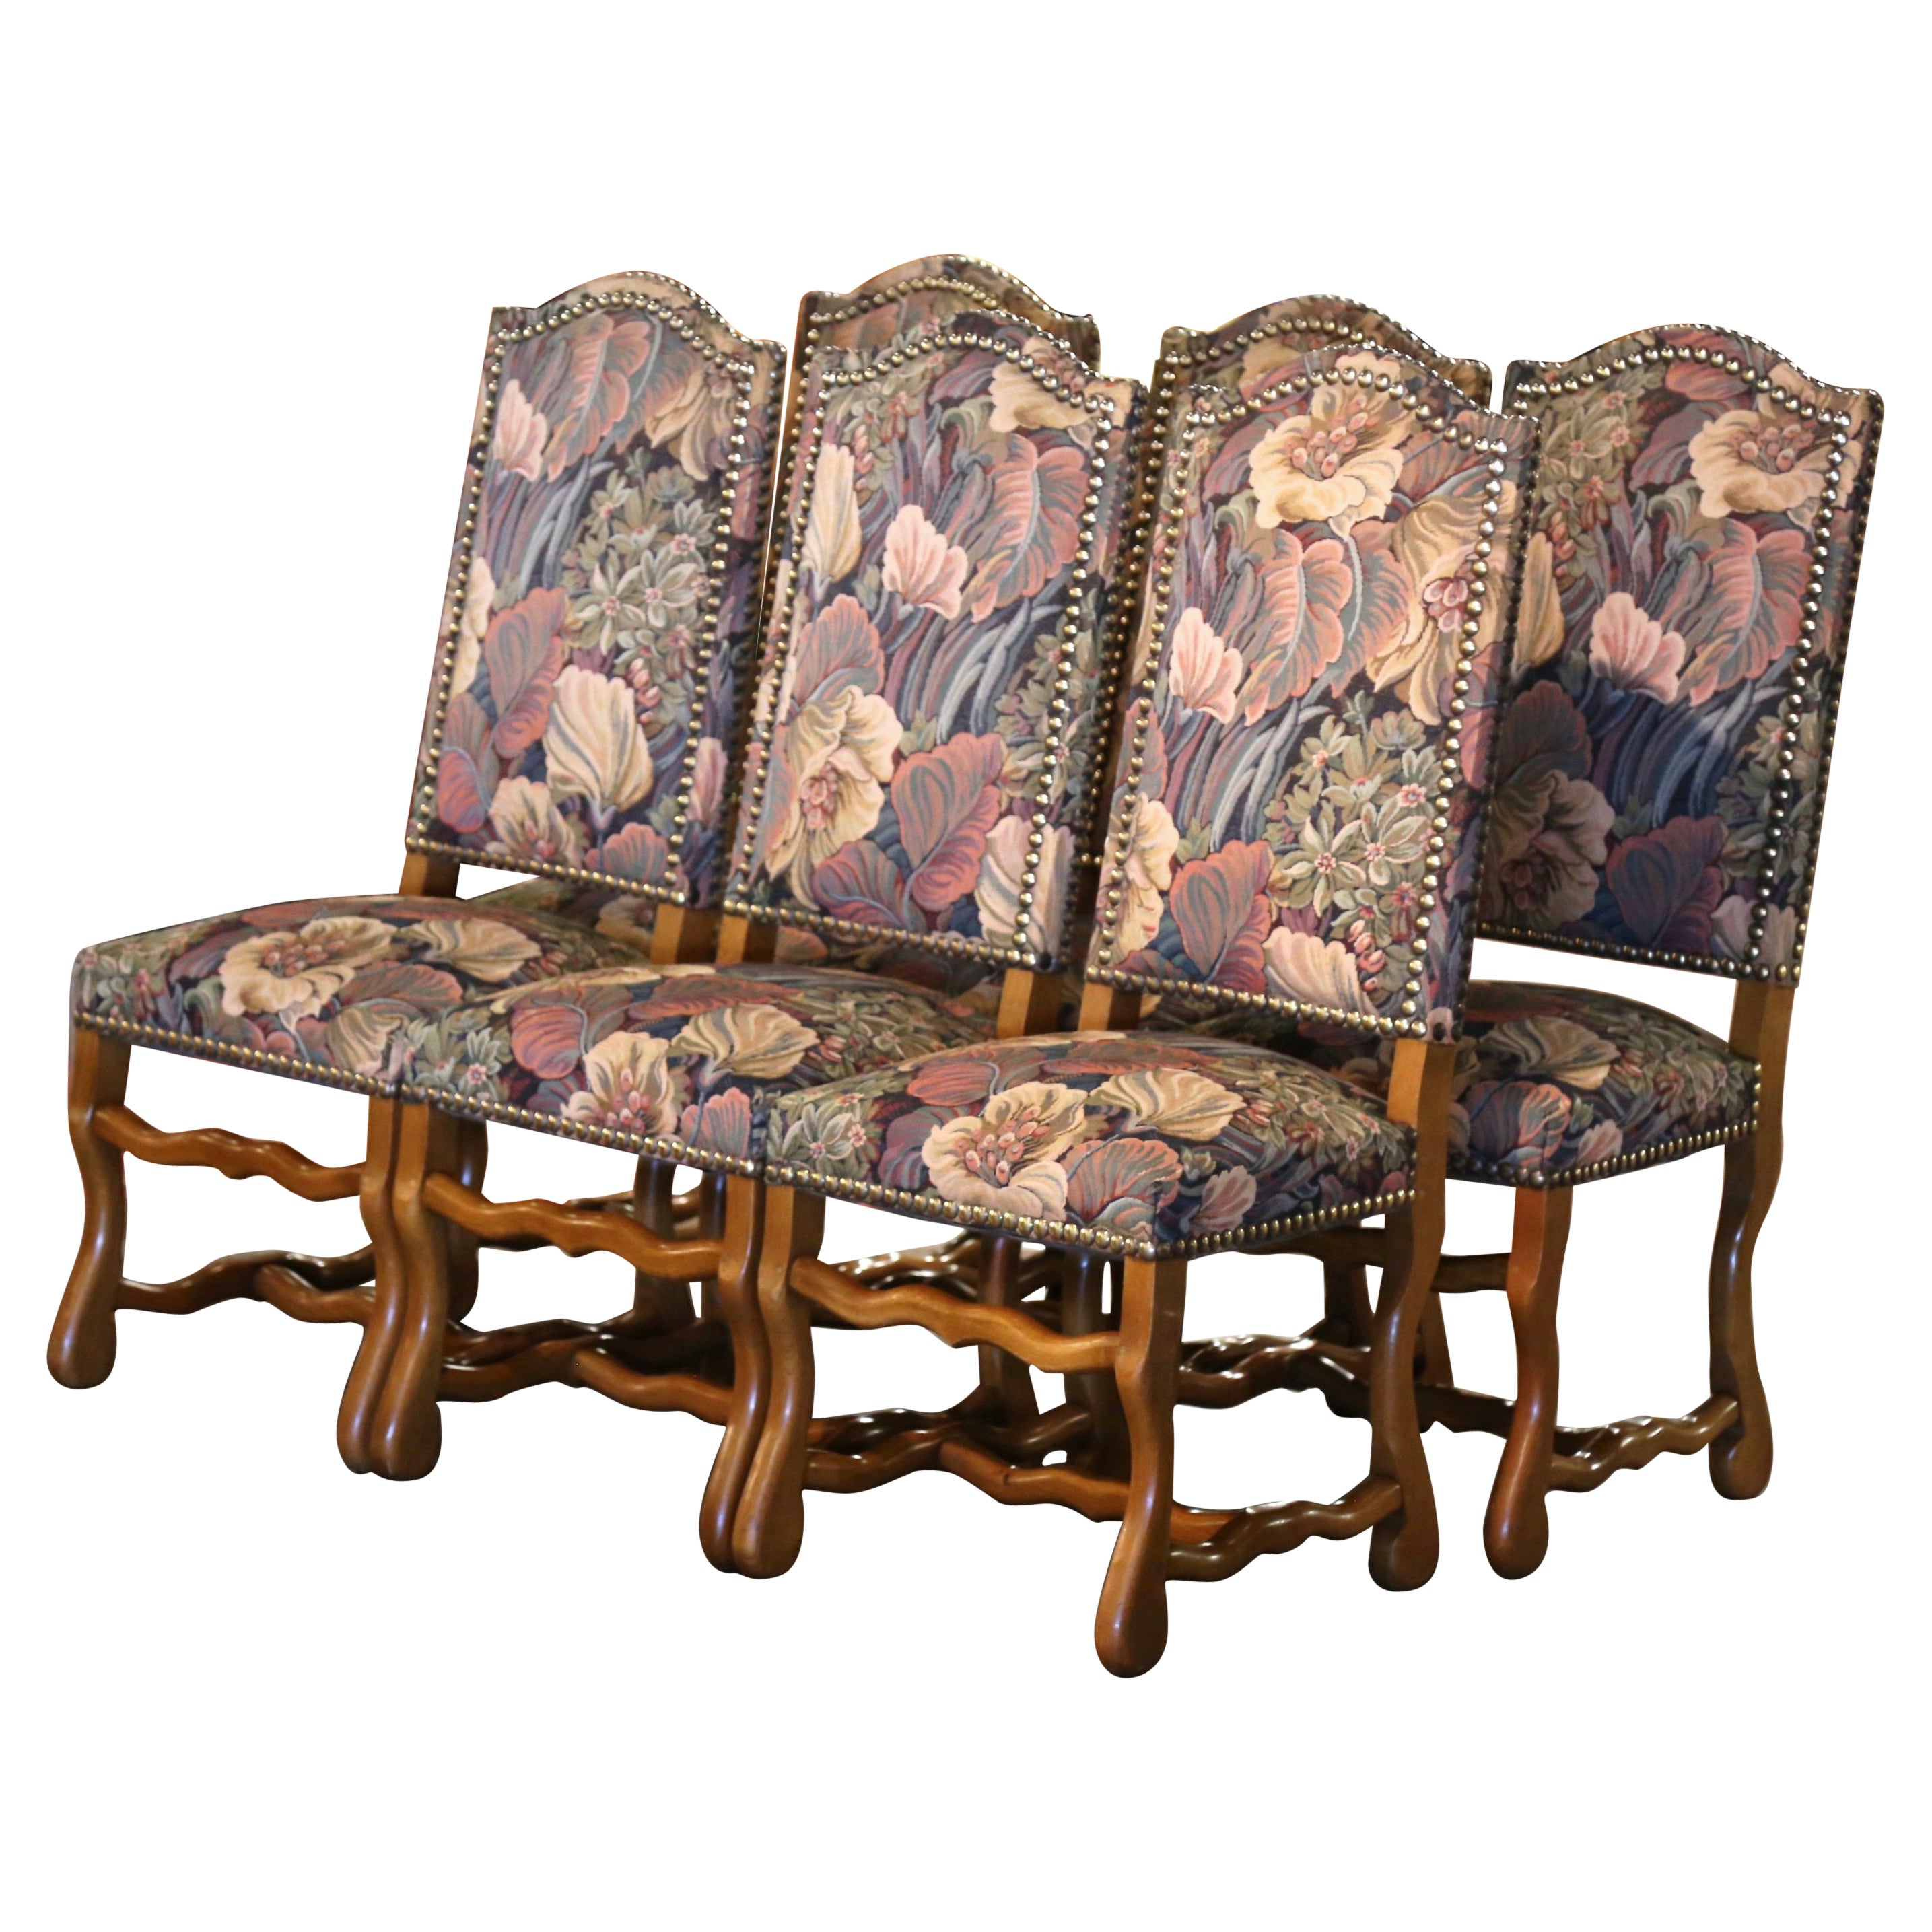 Satz von 6 französischen geschnitzten Schafknochen-Esszimmerstühlen im Vintage-Stil mit Wandteppich